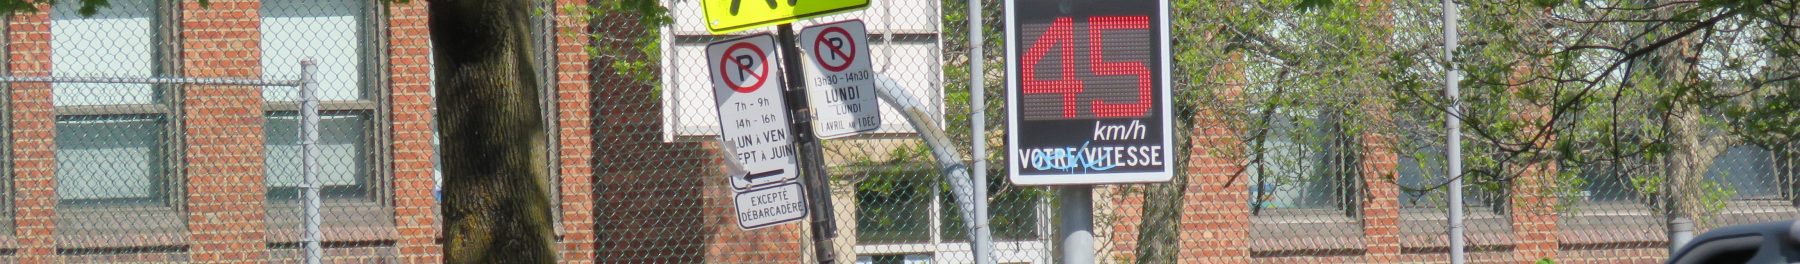 Afficheur de vitesse sur St-Laurent à l'école Ahuntsic. (Photo : Nicolas Brasseur) Ahuntsic-Cartierville Montréal